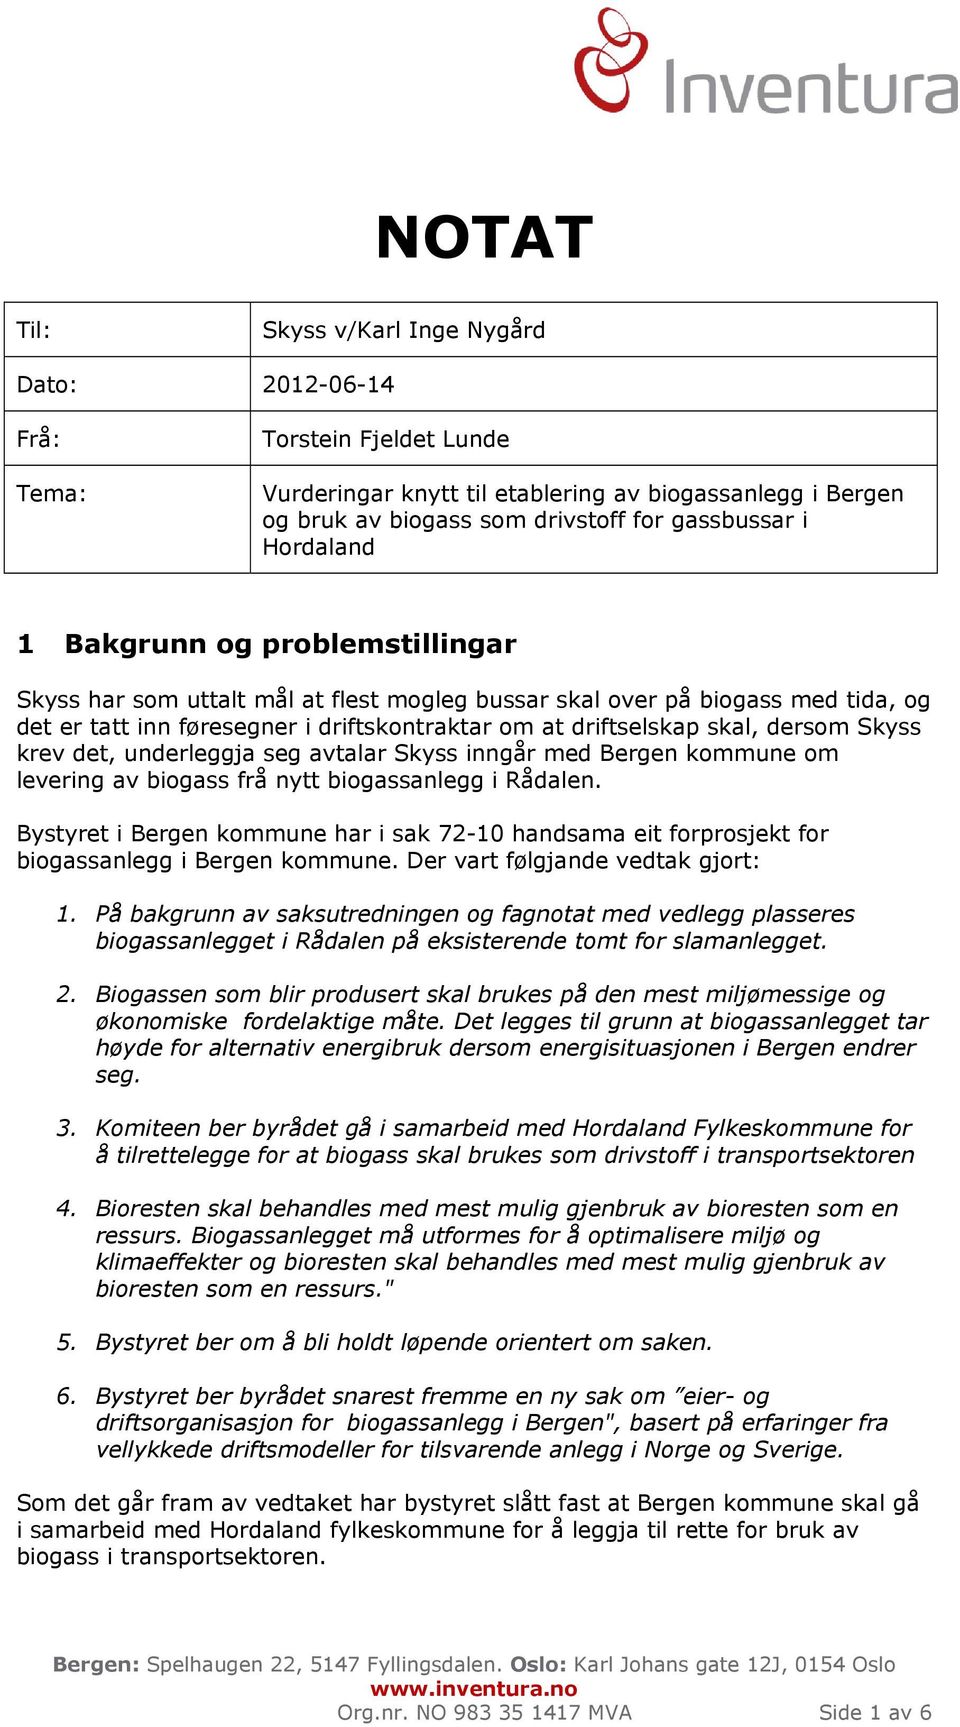 dersom Skyss krev det, underleggja seg avtalar Skyss inngår med Bergen kommune om levering av biogass frå nytt biogassanlegg i Rådalen.